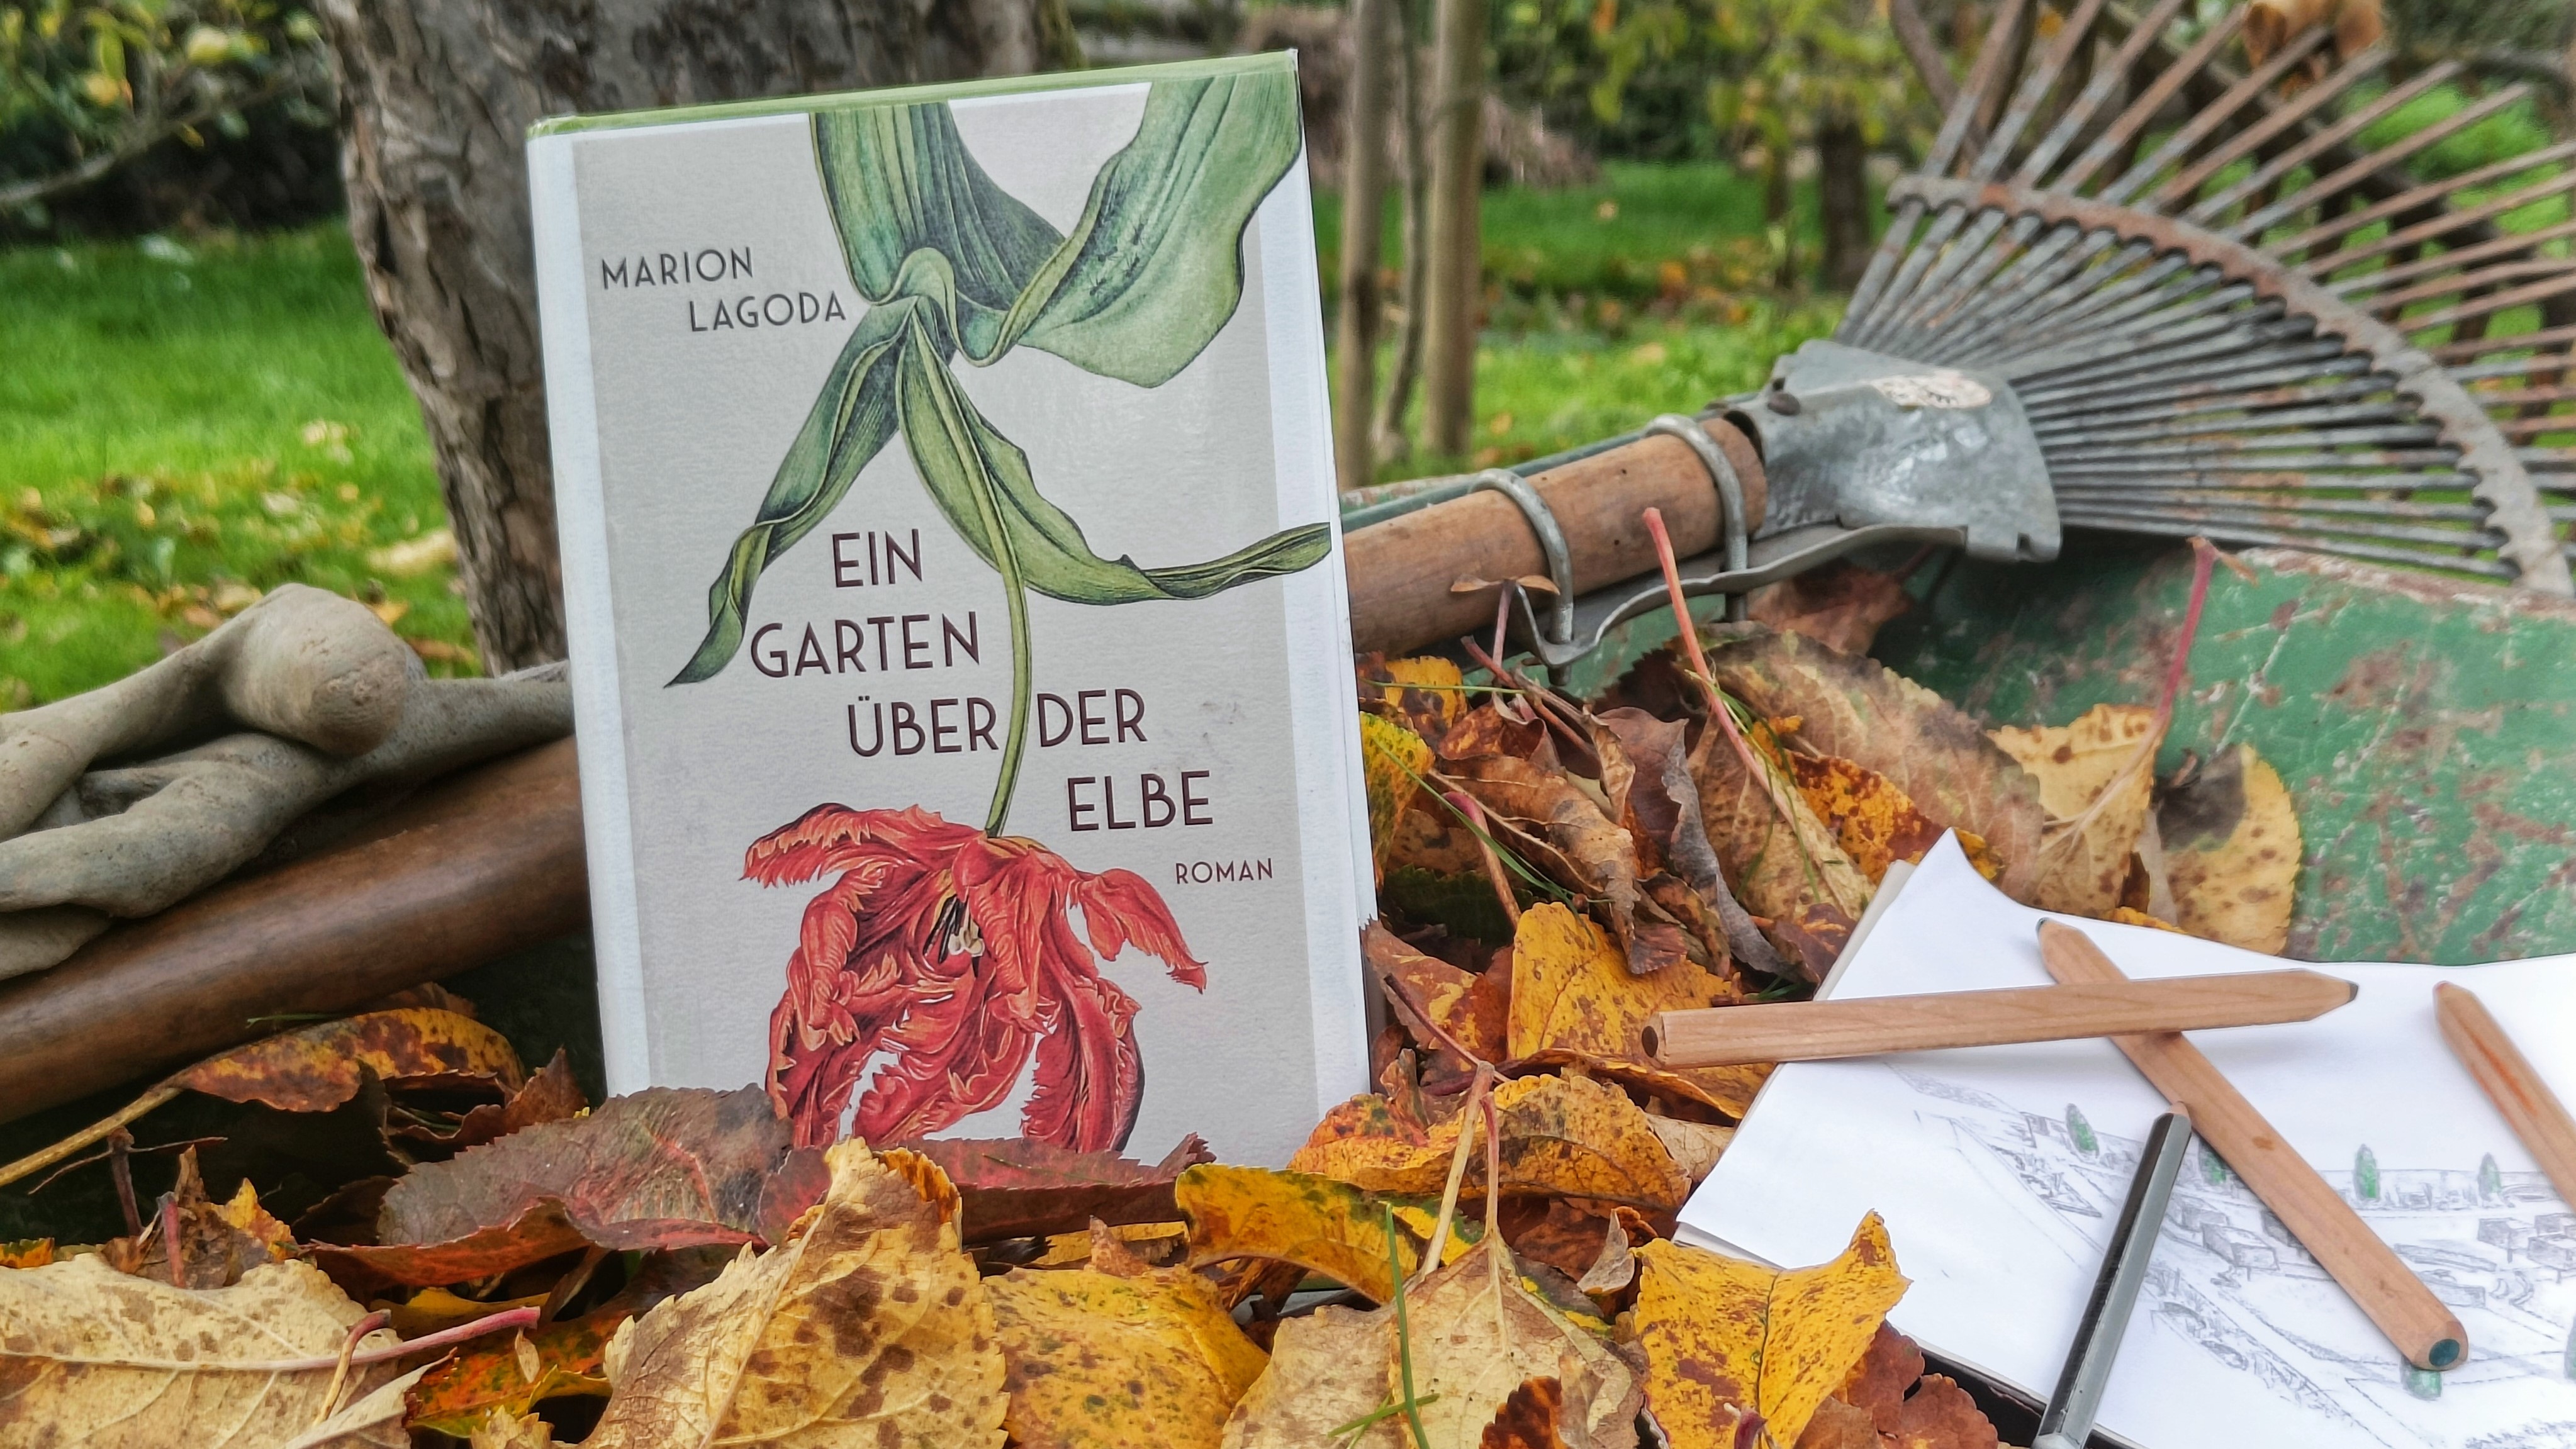 Das Buch "Ein Garten über der Elbe" auf einer Wiese, angelehnt an einen Rechen.